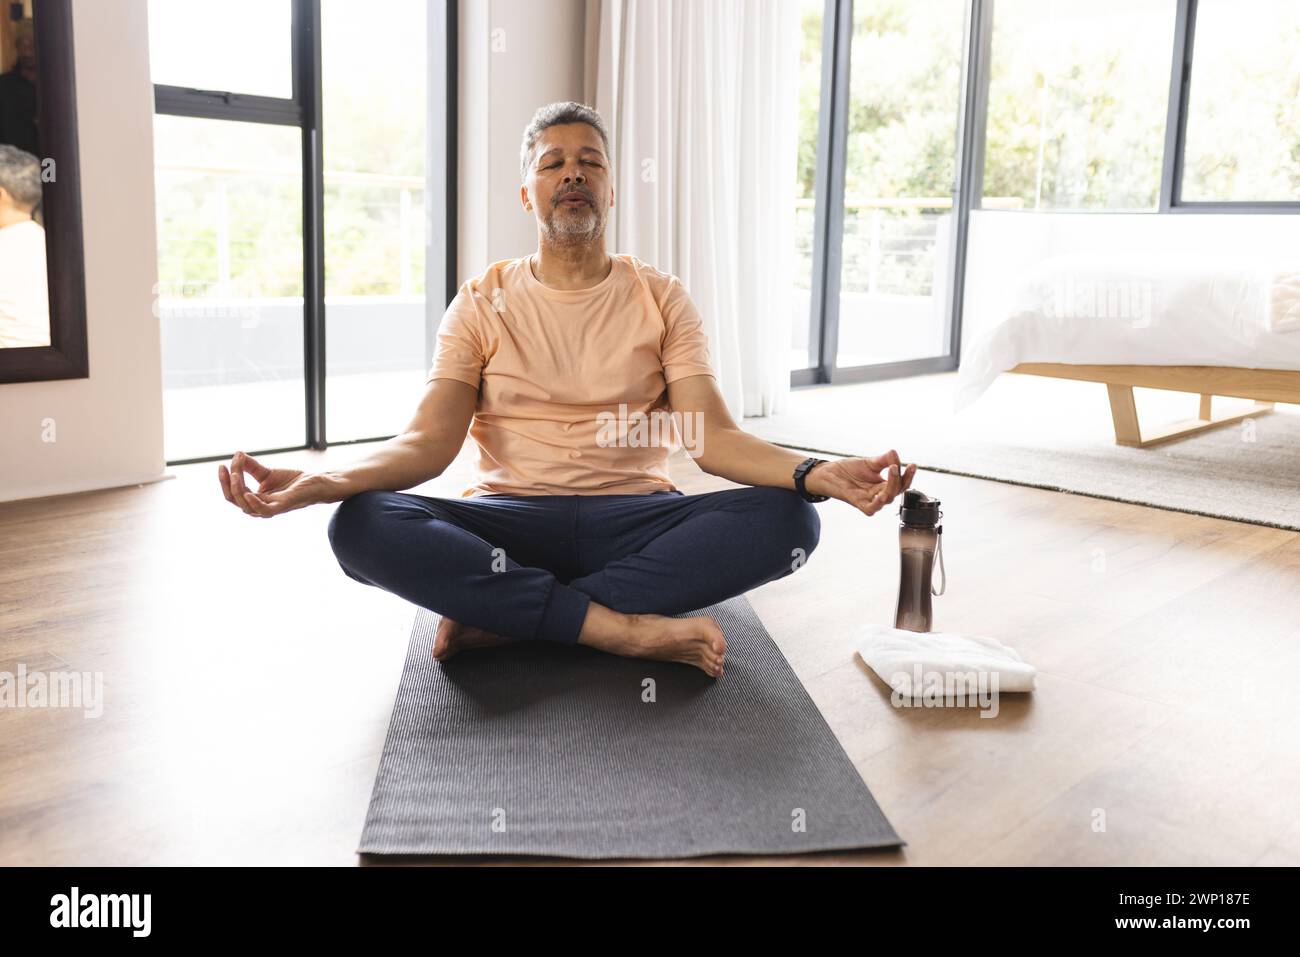 Birassischer Seniorenmann meditiert auf einer Yogamatte in einem hellen Raum Stockfoto